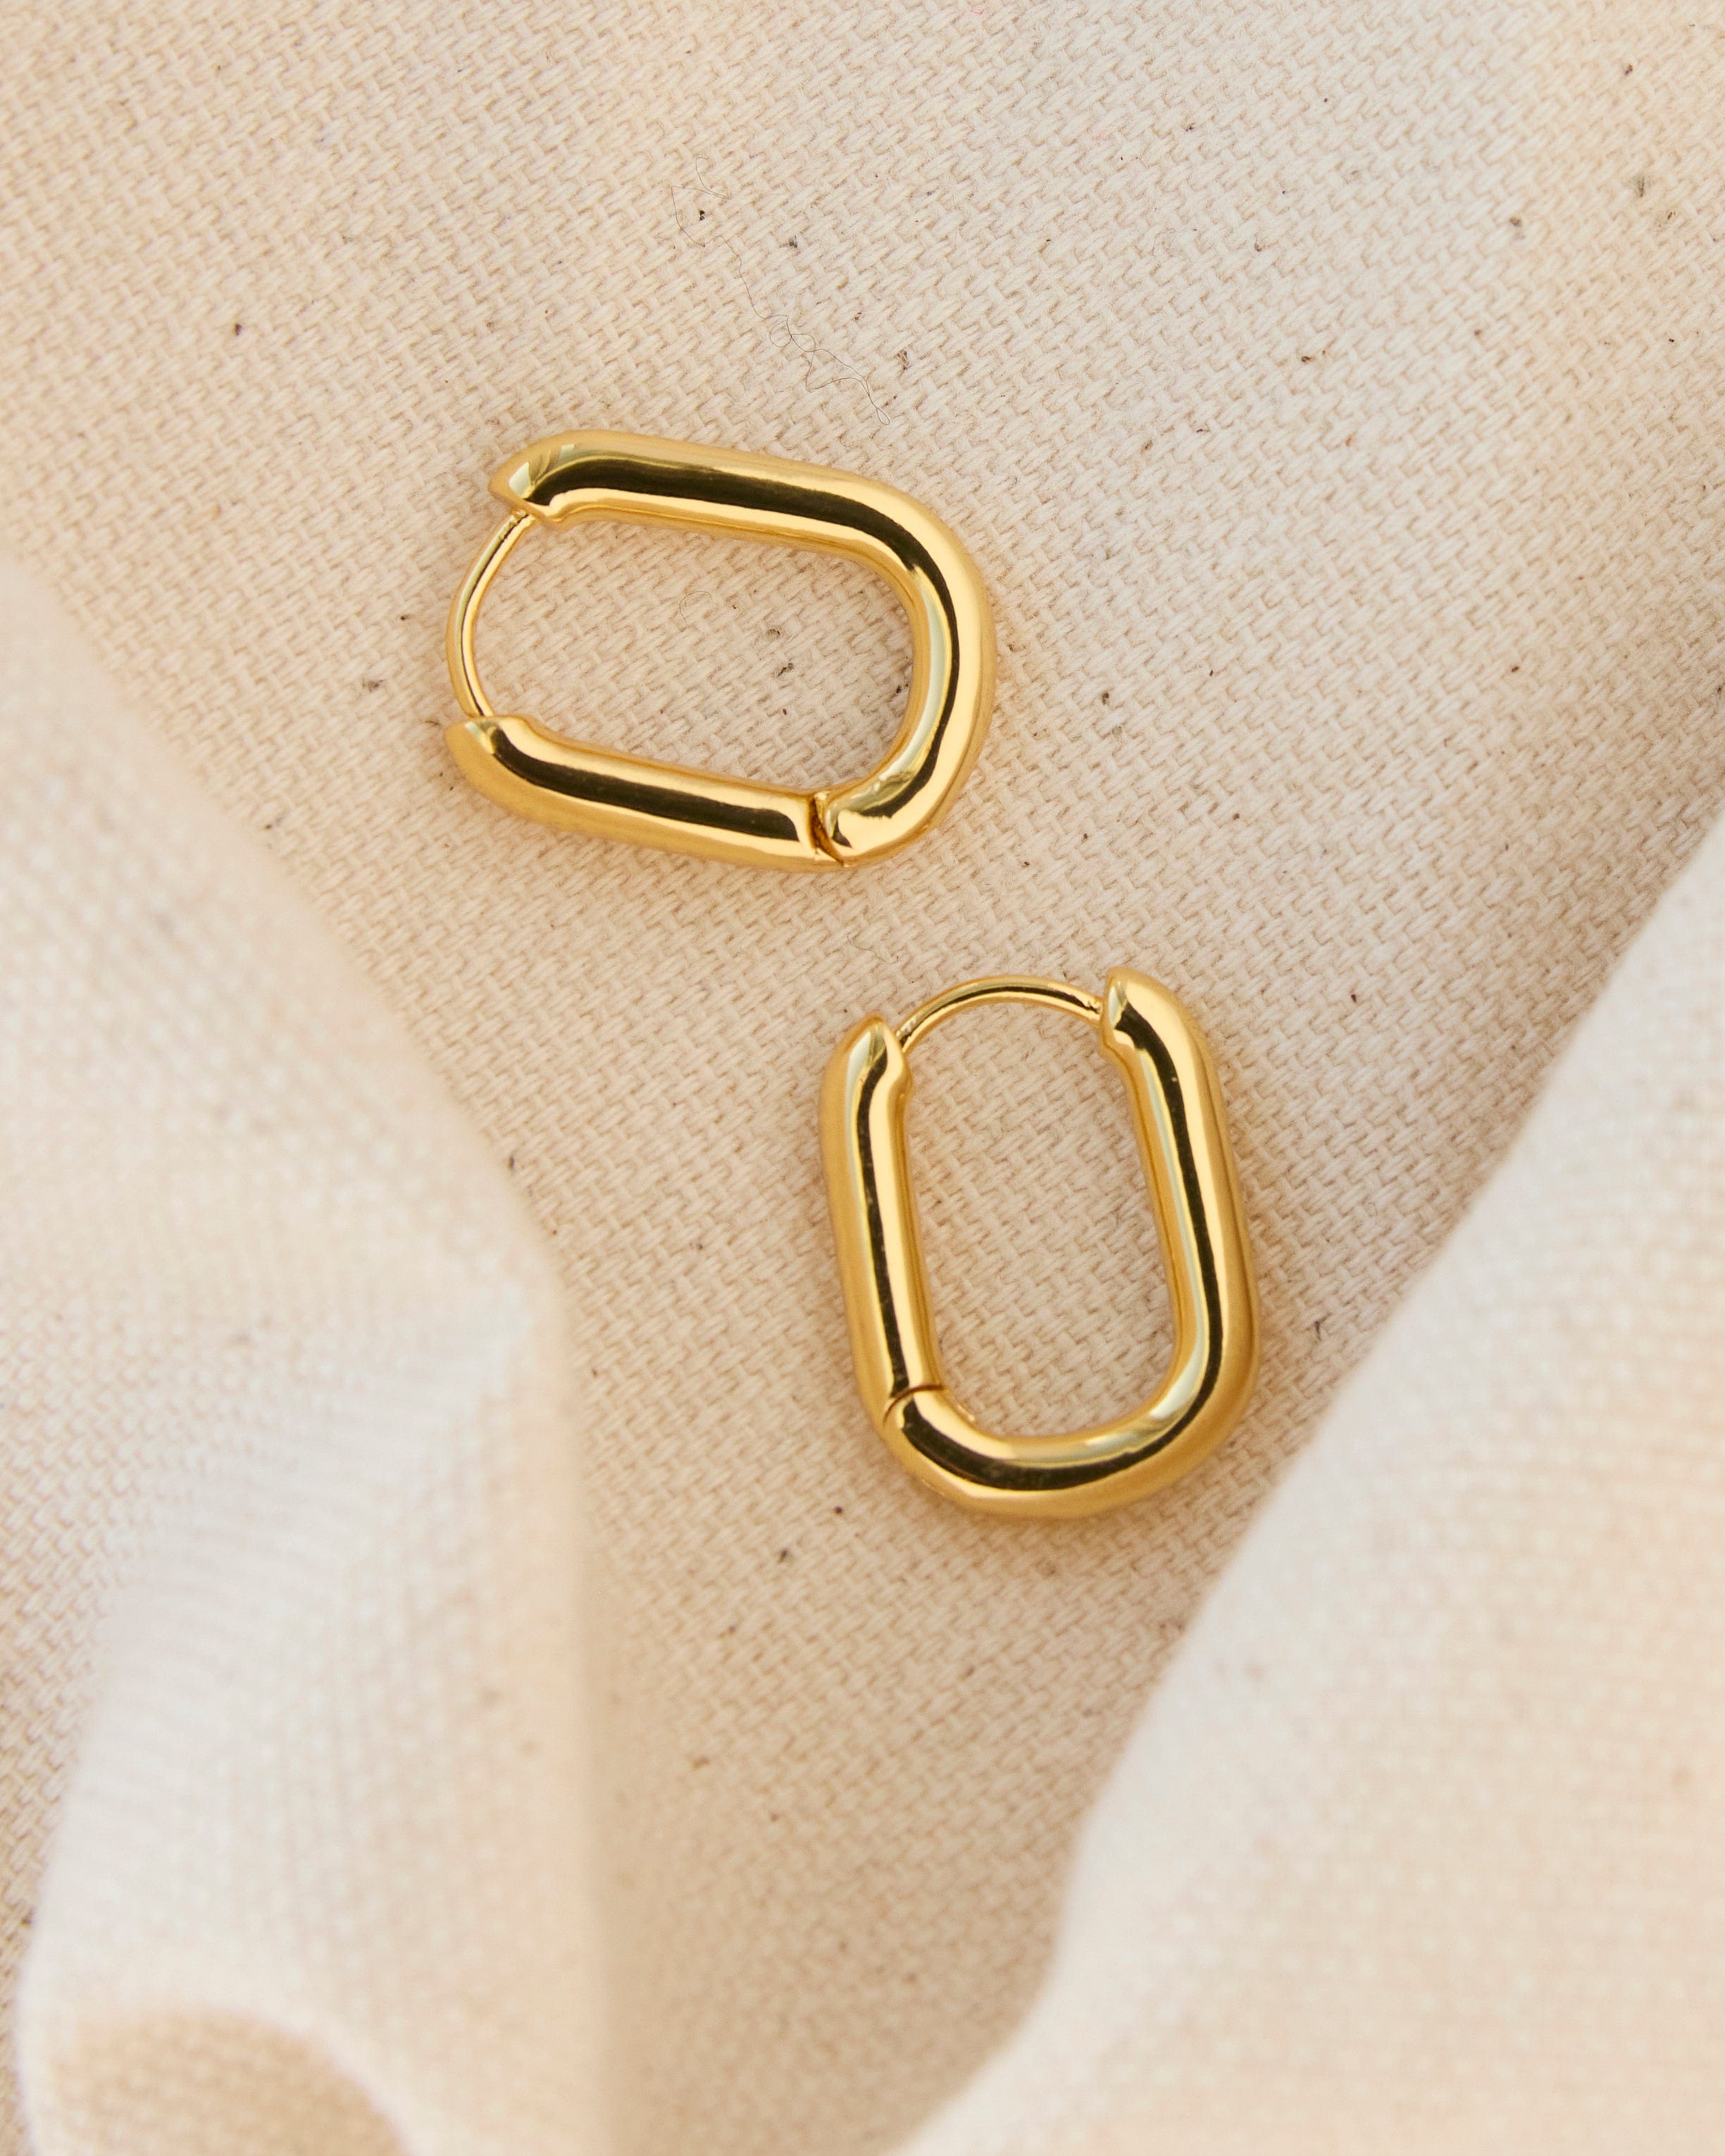 Gold curved hoop earrings.